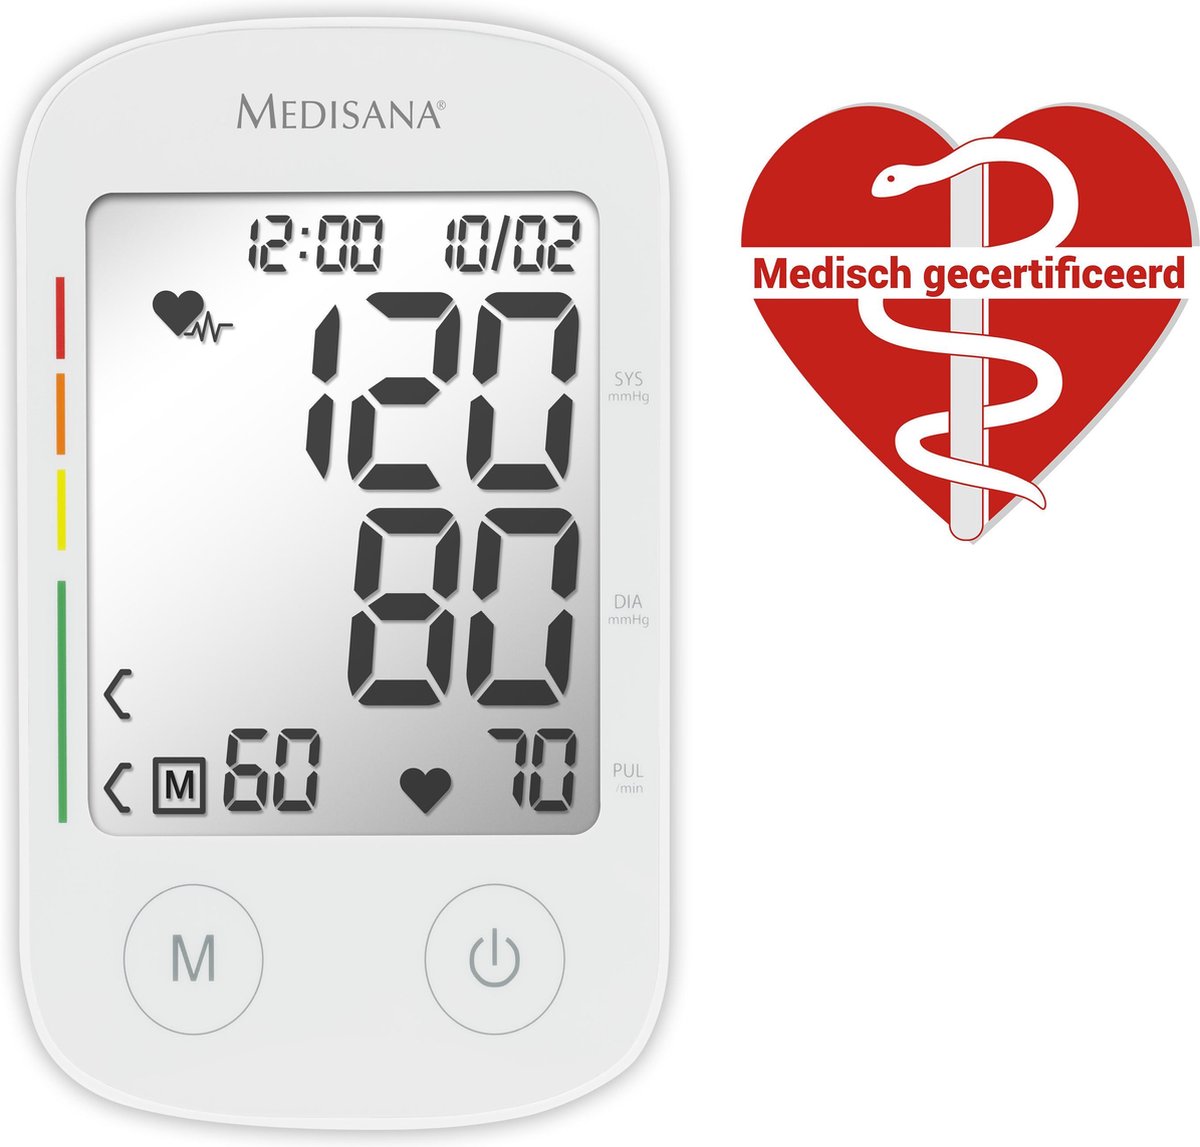 Medisana BU 535 Bovenarm bloeddrukmeter - Medisana